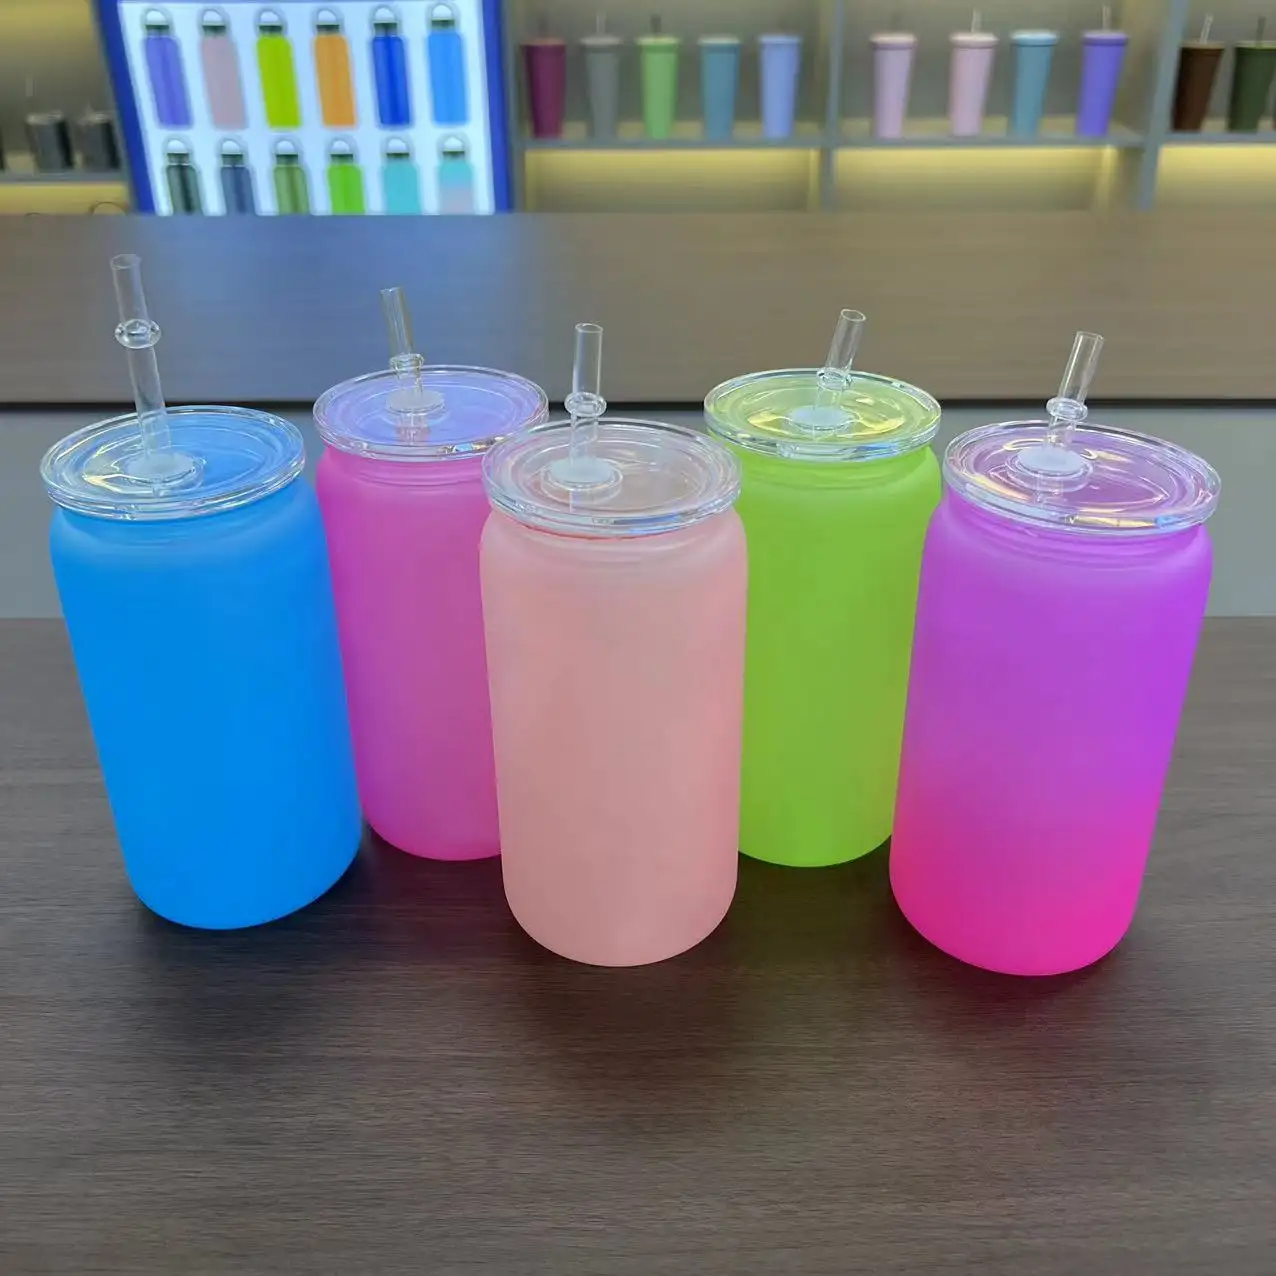 우유 주스 콜라 음료 도매 다채로운 그라디언트 플라스틱 컵 용 빨대와 뚜껑이있는 플라스틱 병 맞춤형 인쇄